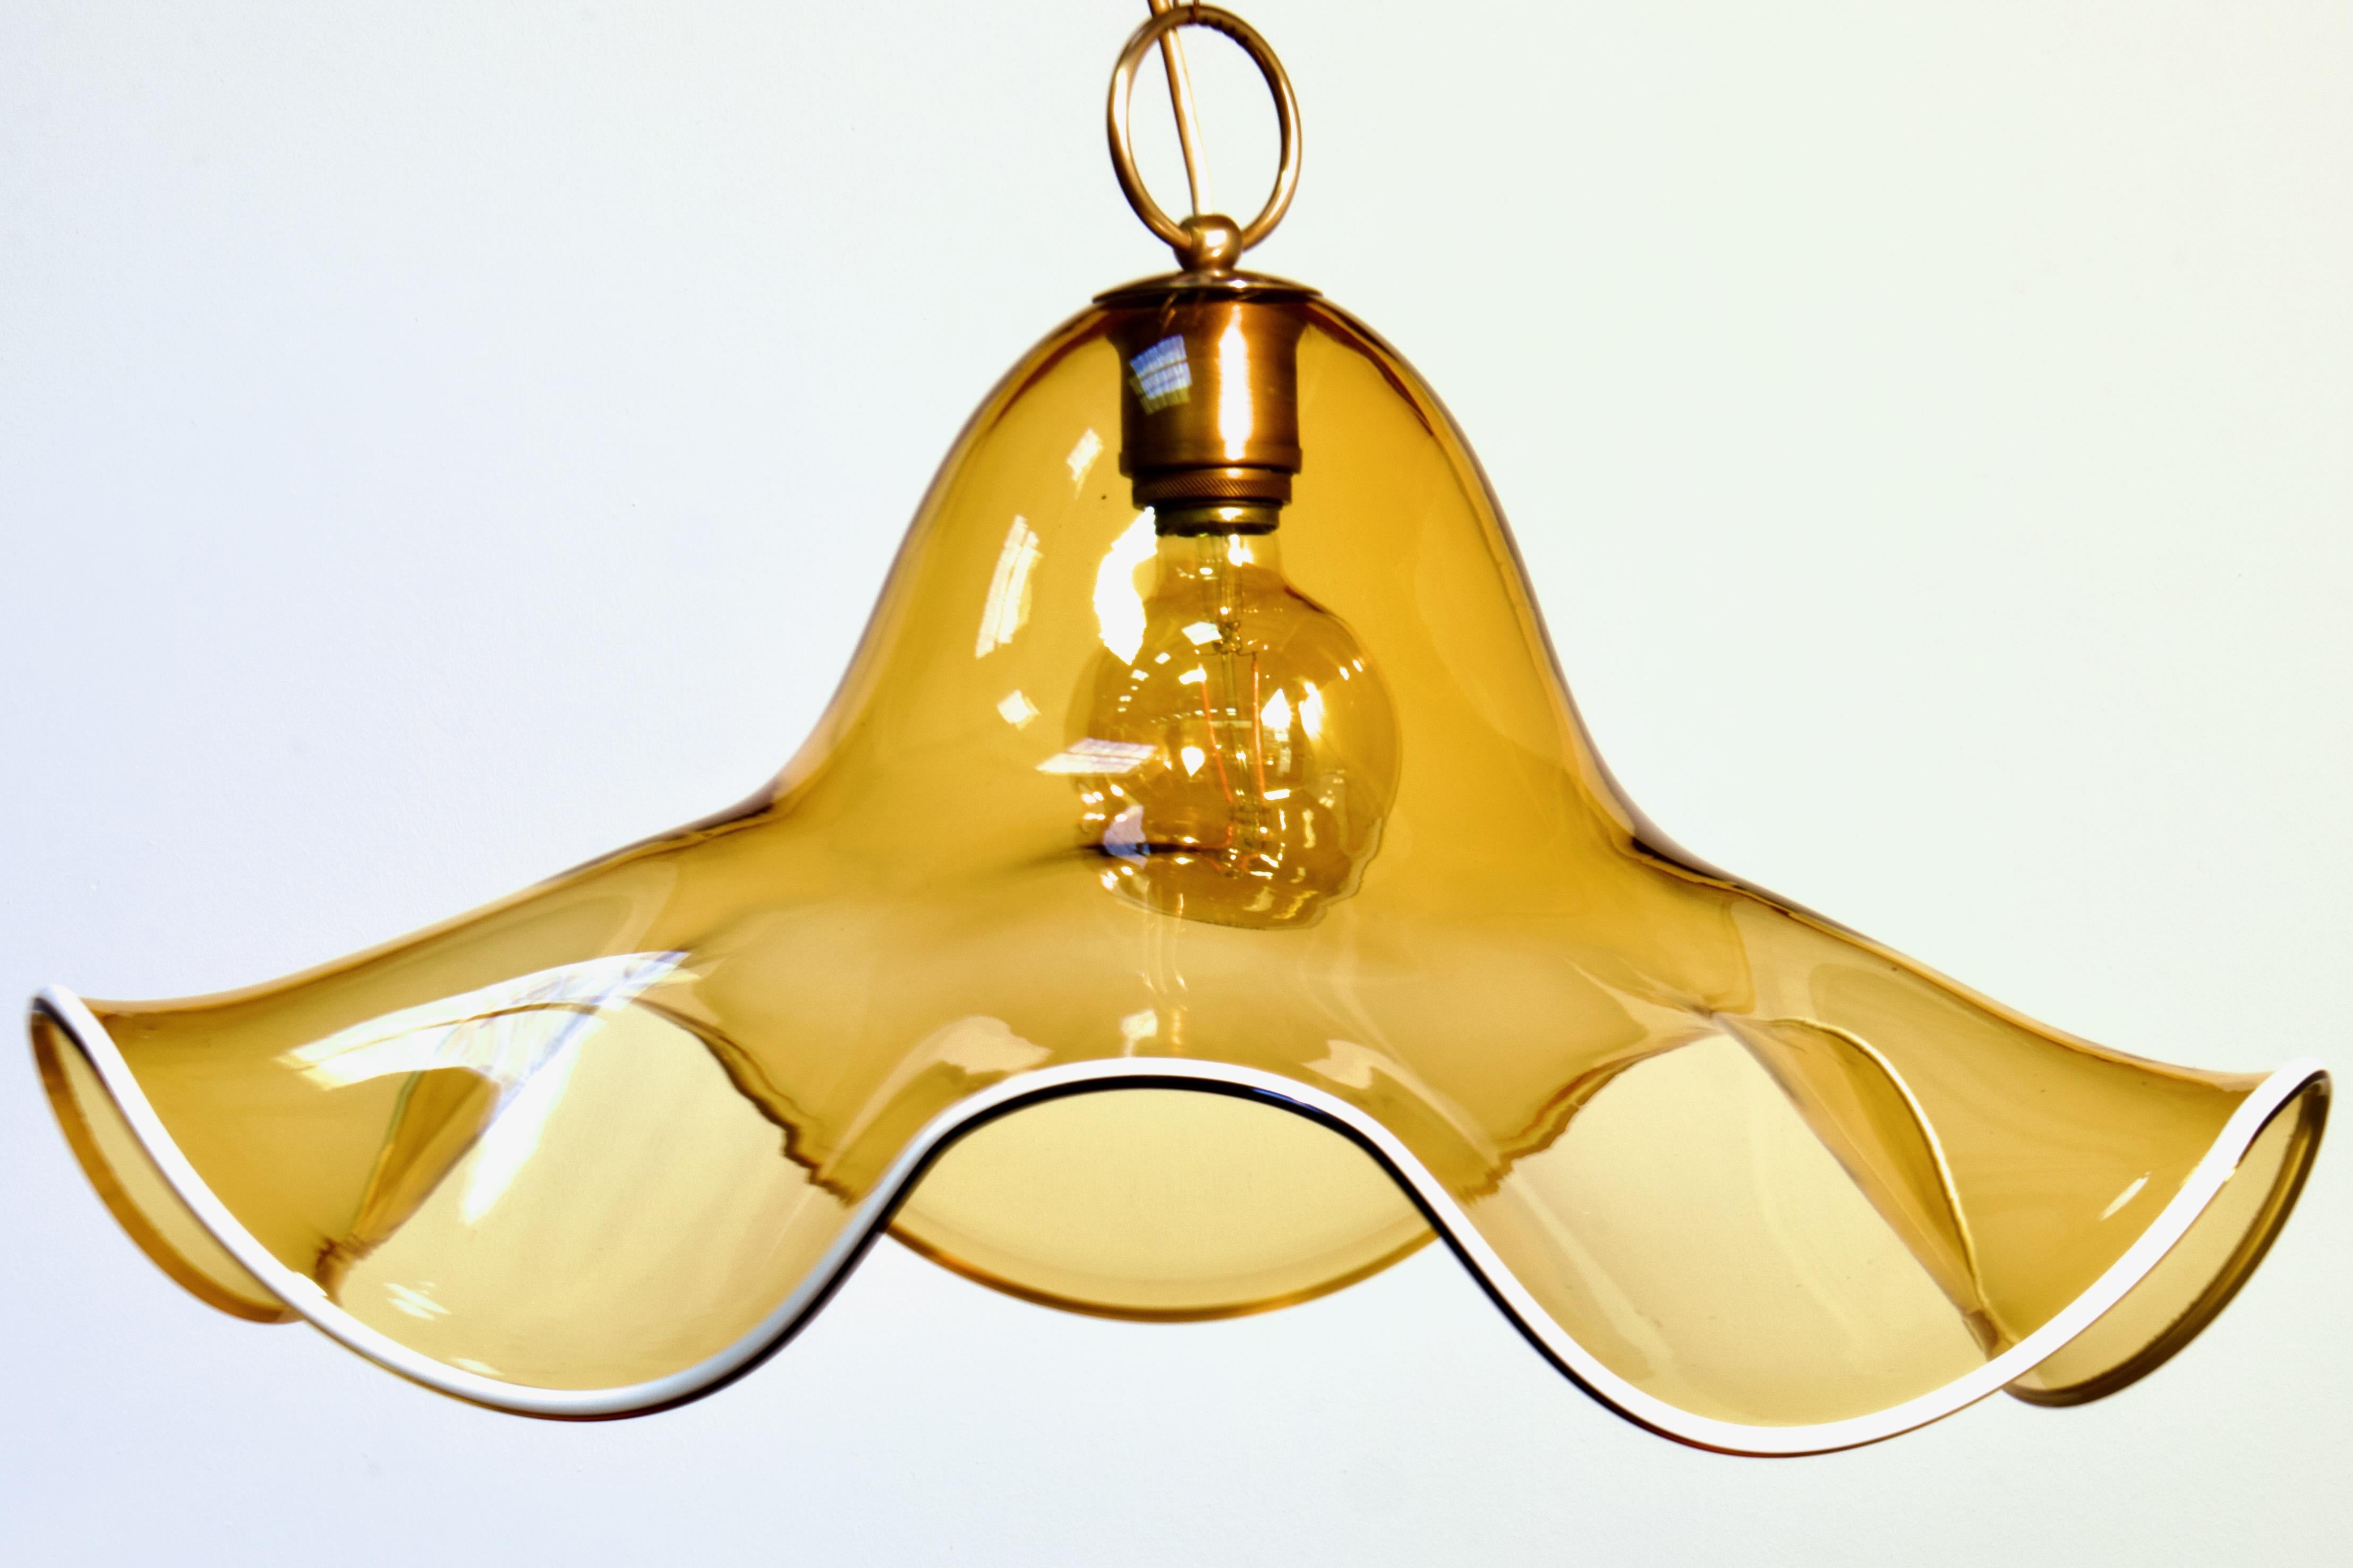 Lámpara colgante floral grande (24,5 pulgadas de diámetro) de estilo moderno orgánico italiano de mediados de siglo de 1970, de La Murrina de Murano. 

Formado a partir de una gran hoja gruesa de vidrio soplado transparente, hecho a mano, con un